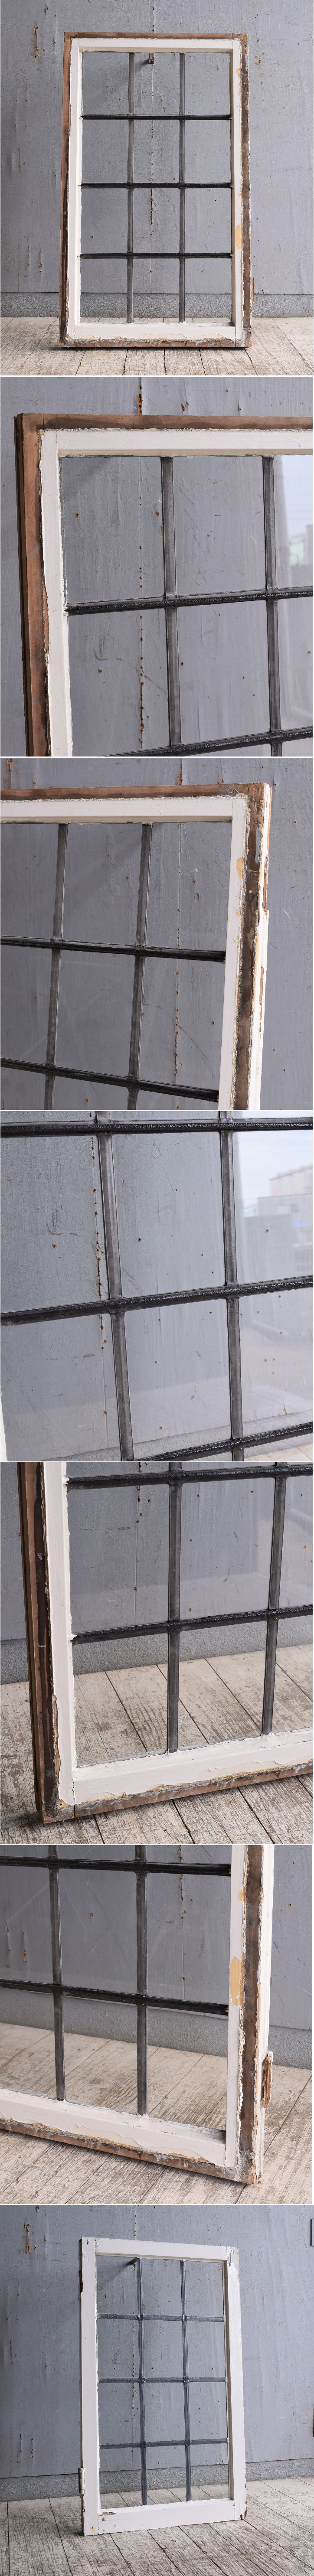 イギリス アンティーク 窓 無色透明 10180